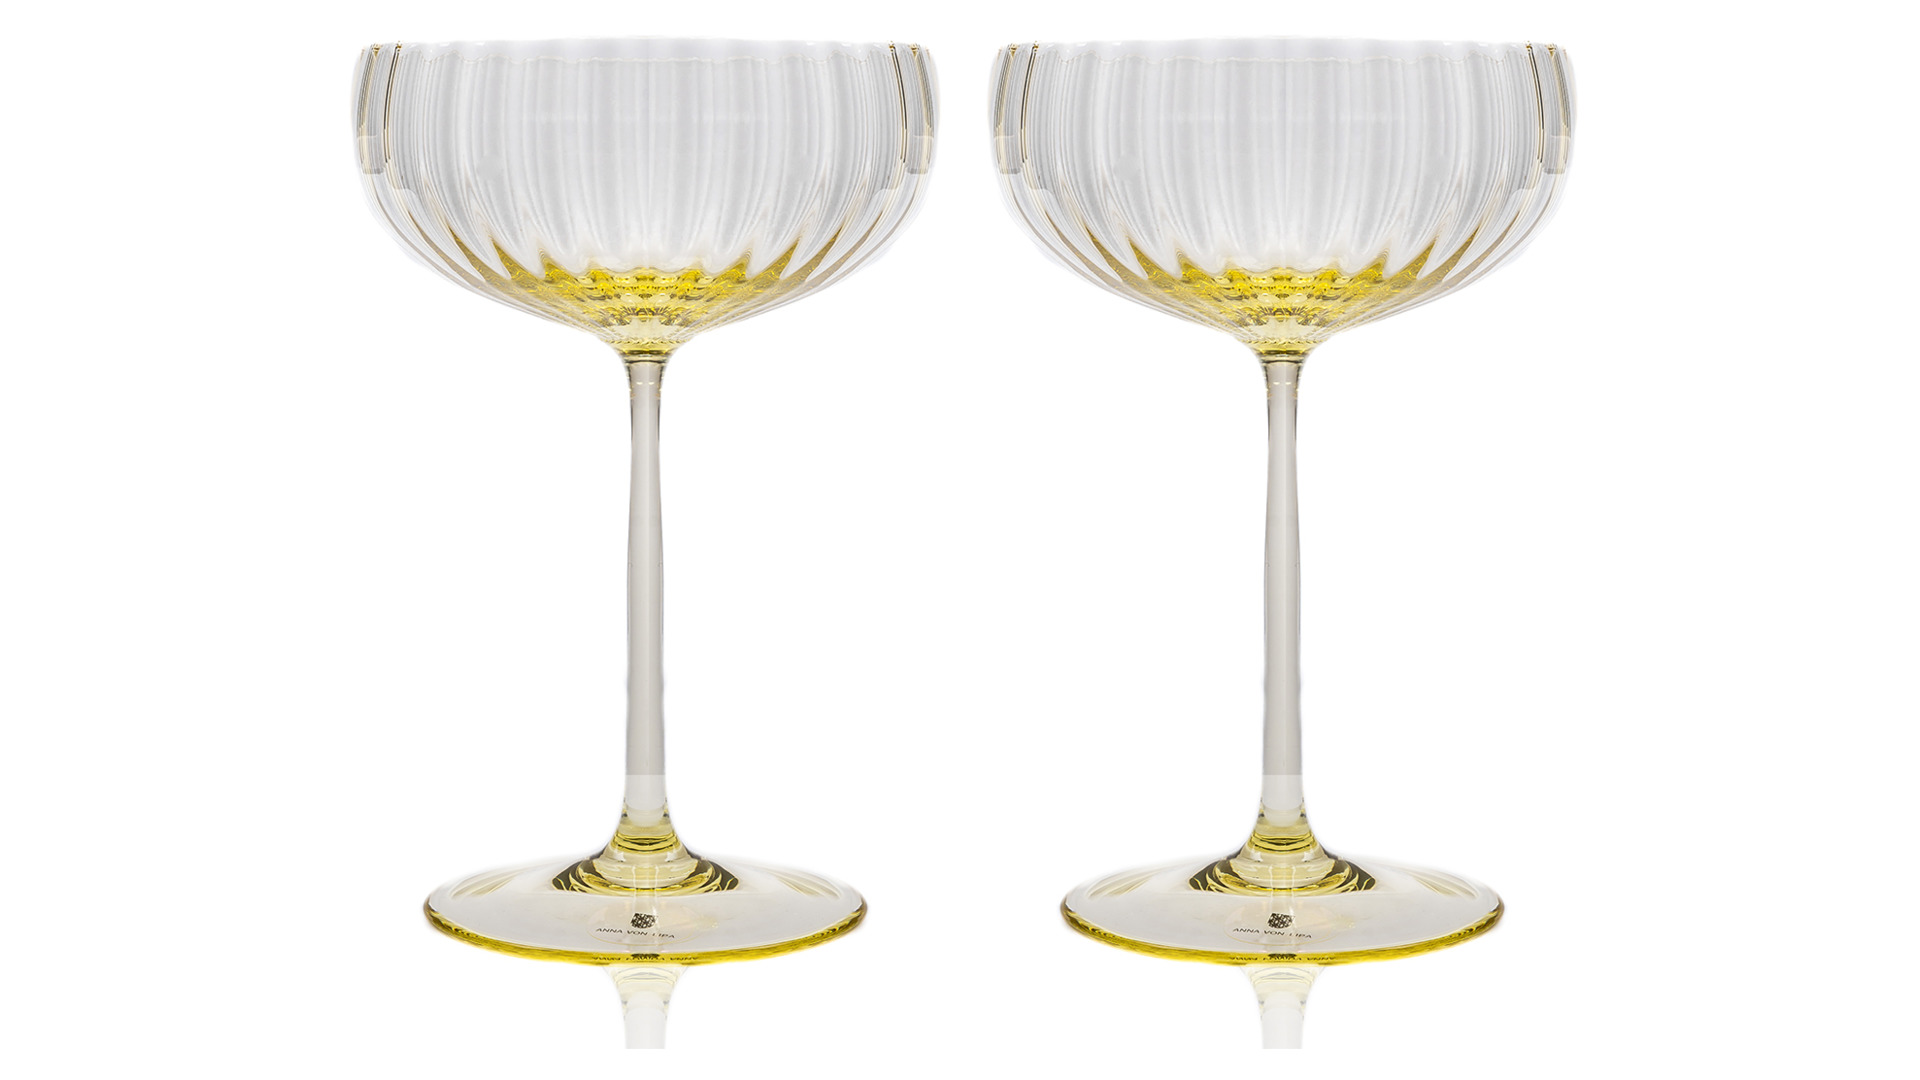 Набор креманок для шампанского Anna Von Lipa Лион 280 мл, 2 шт, стекло хрустальное, желтый